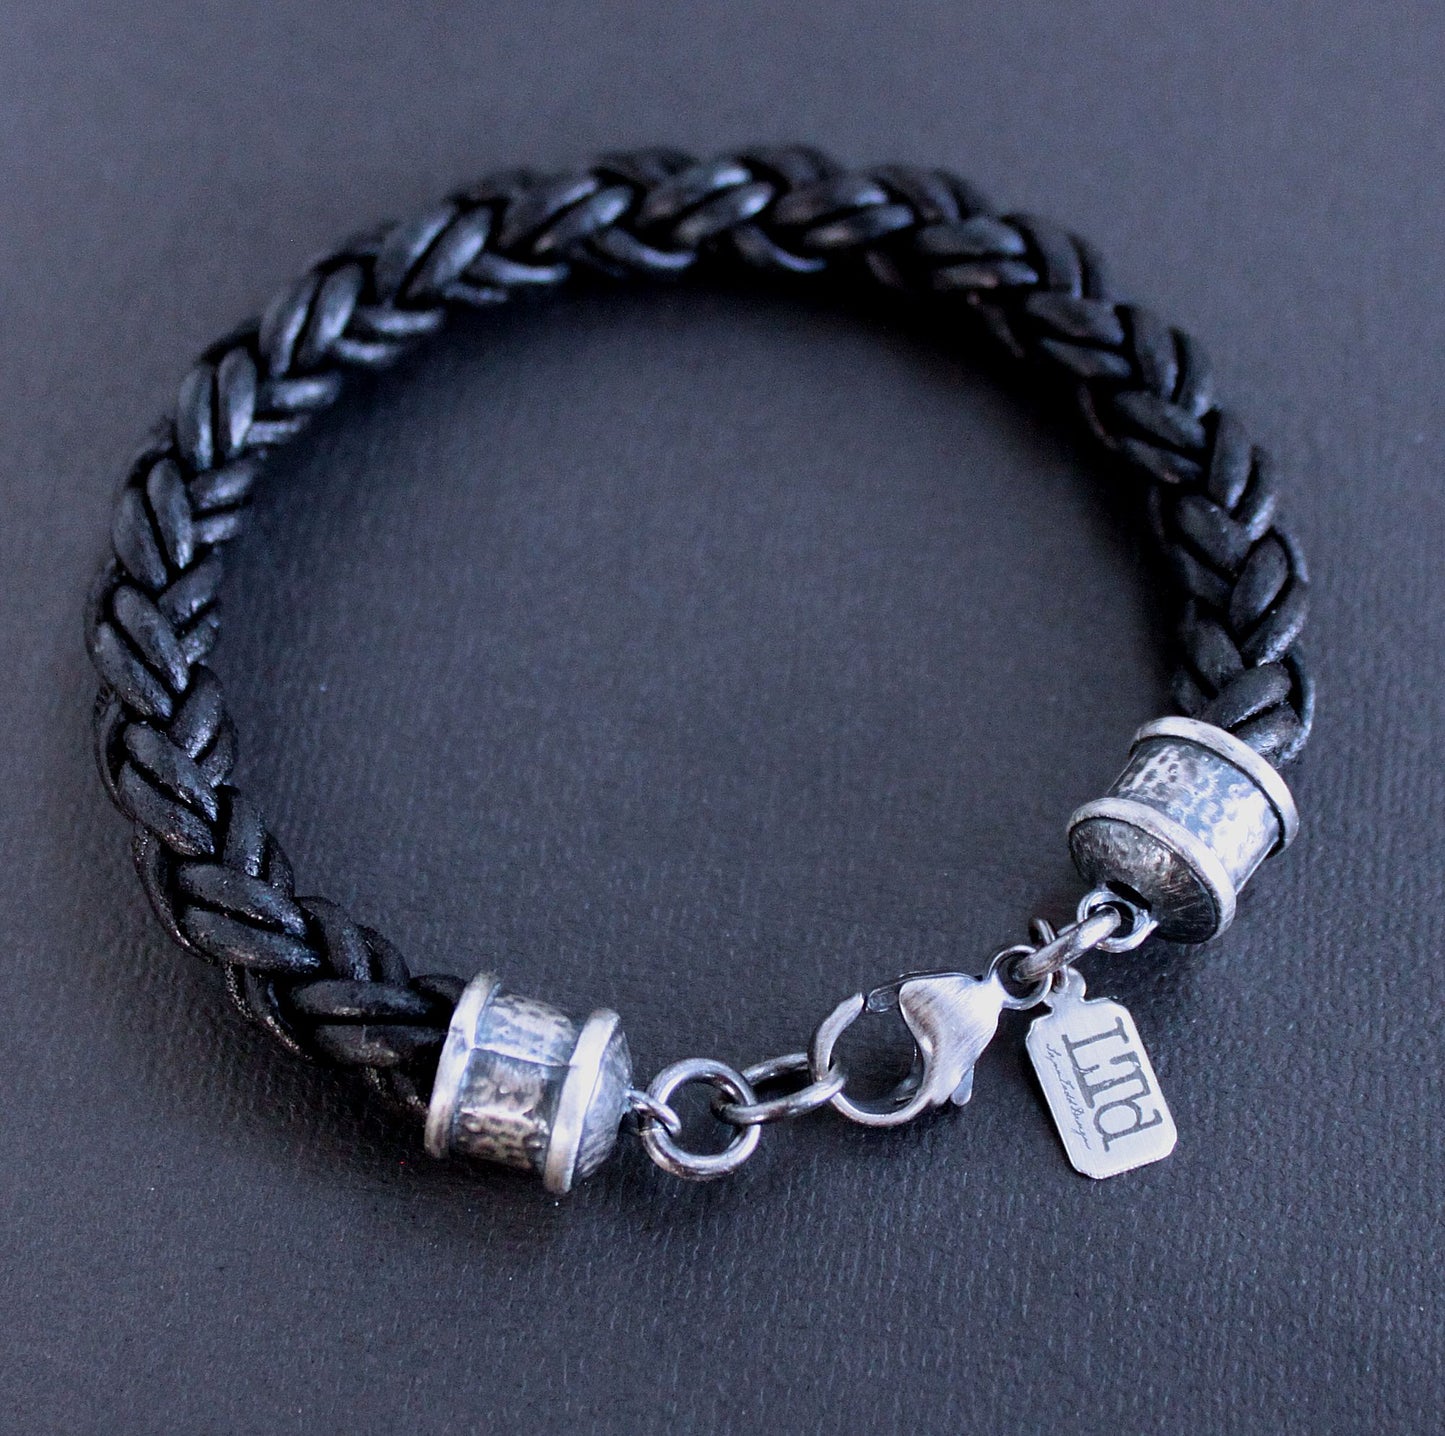 Men's thick leather braid bracelet